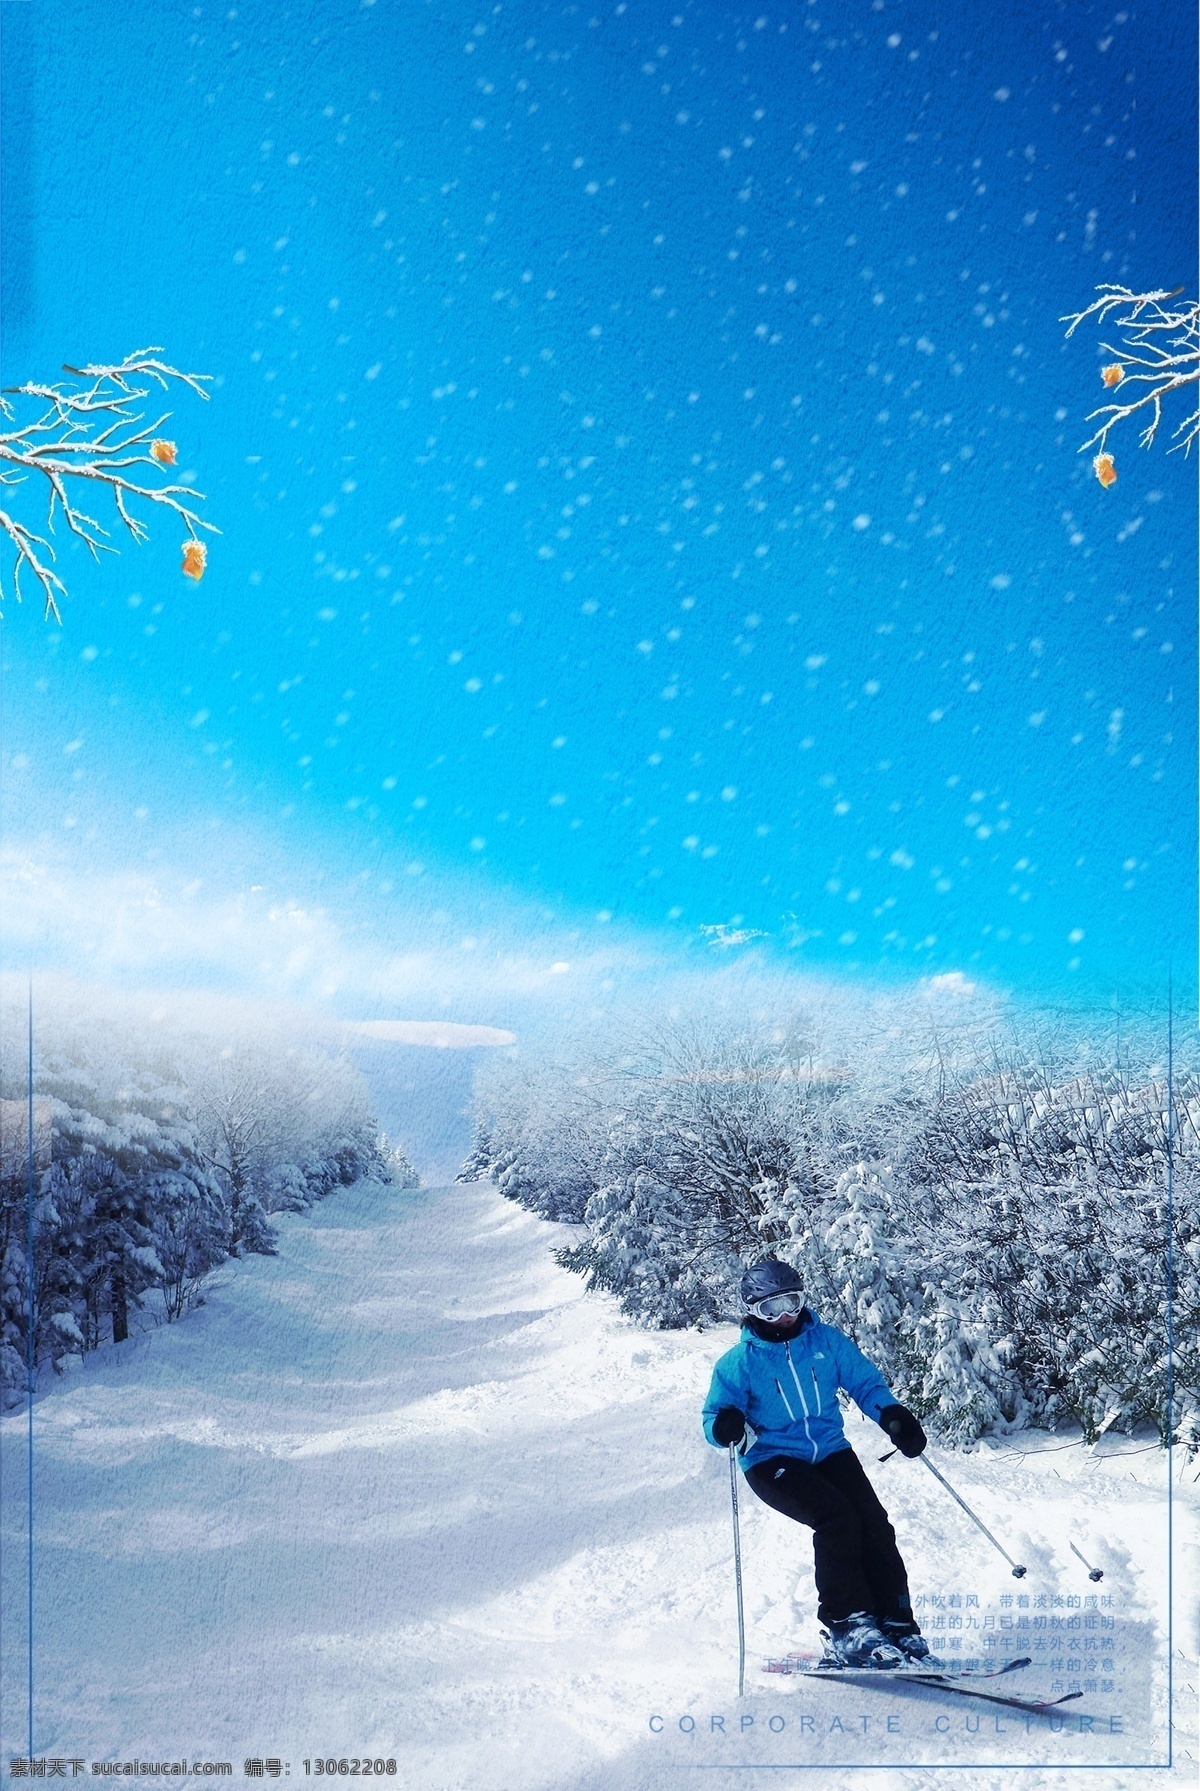 冬季 激情 滑雪 背景 雪花 树枝 冬天 海报背景 下雪 冬季滑雪 滑雪场 冰雪背景 激情滑雪 滑雪比赛 滑雪活动背景 冬季活动背景 滑雪展板